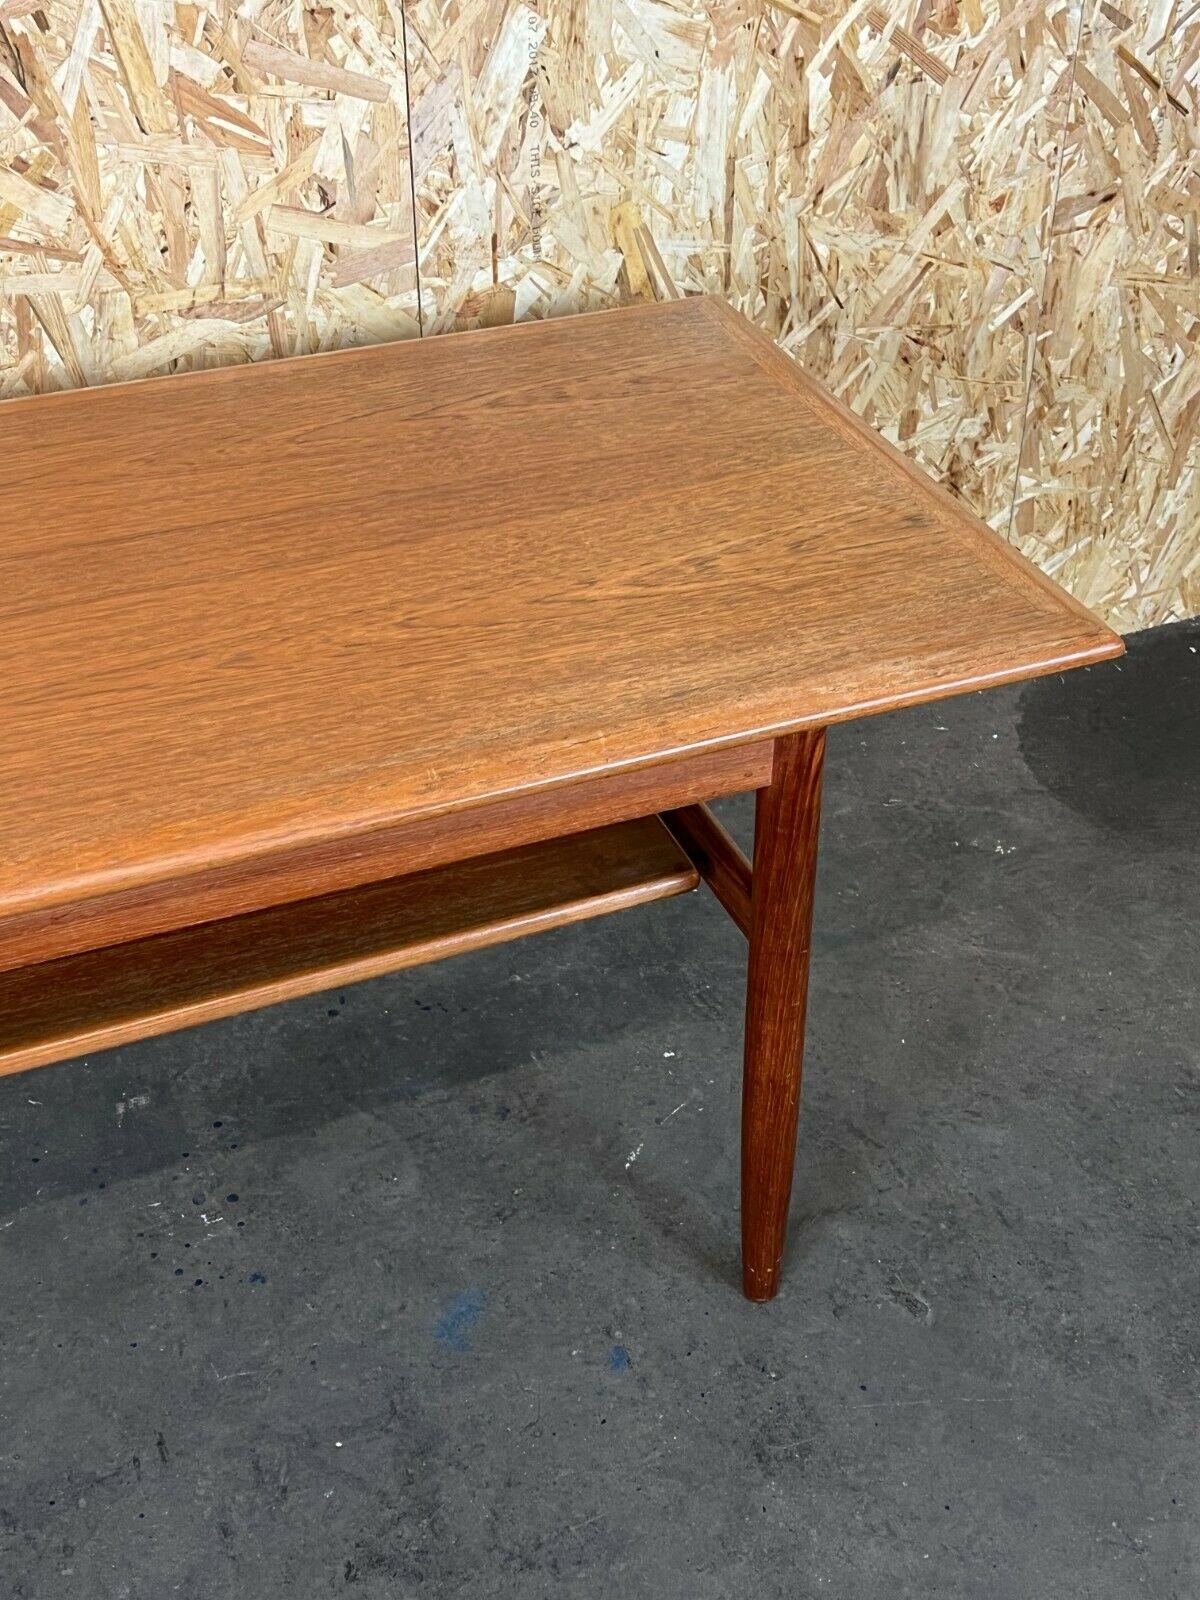 60s 70s Teak Table Coffee Table Danish Modern Design Denmark 1